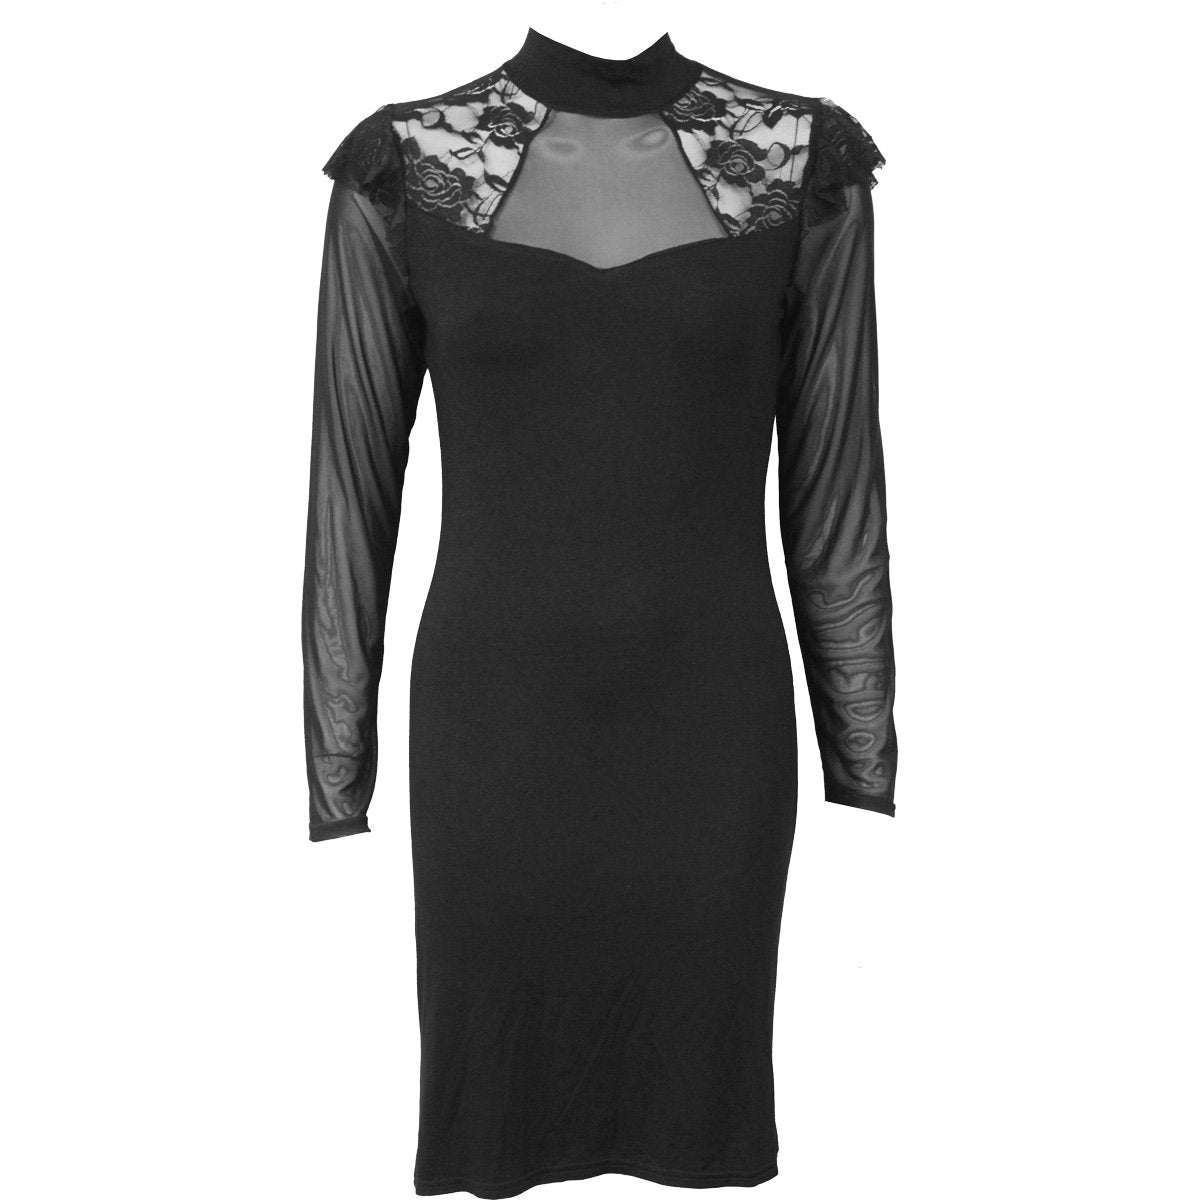 GOTHIC ELEGANCE - Lace Shoulder Corset Dress - Spiral USA